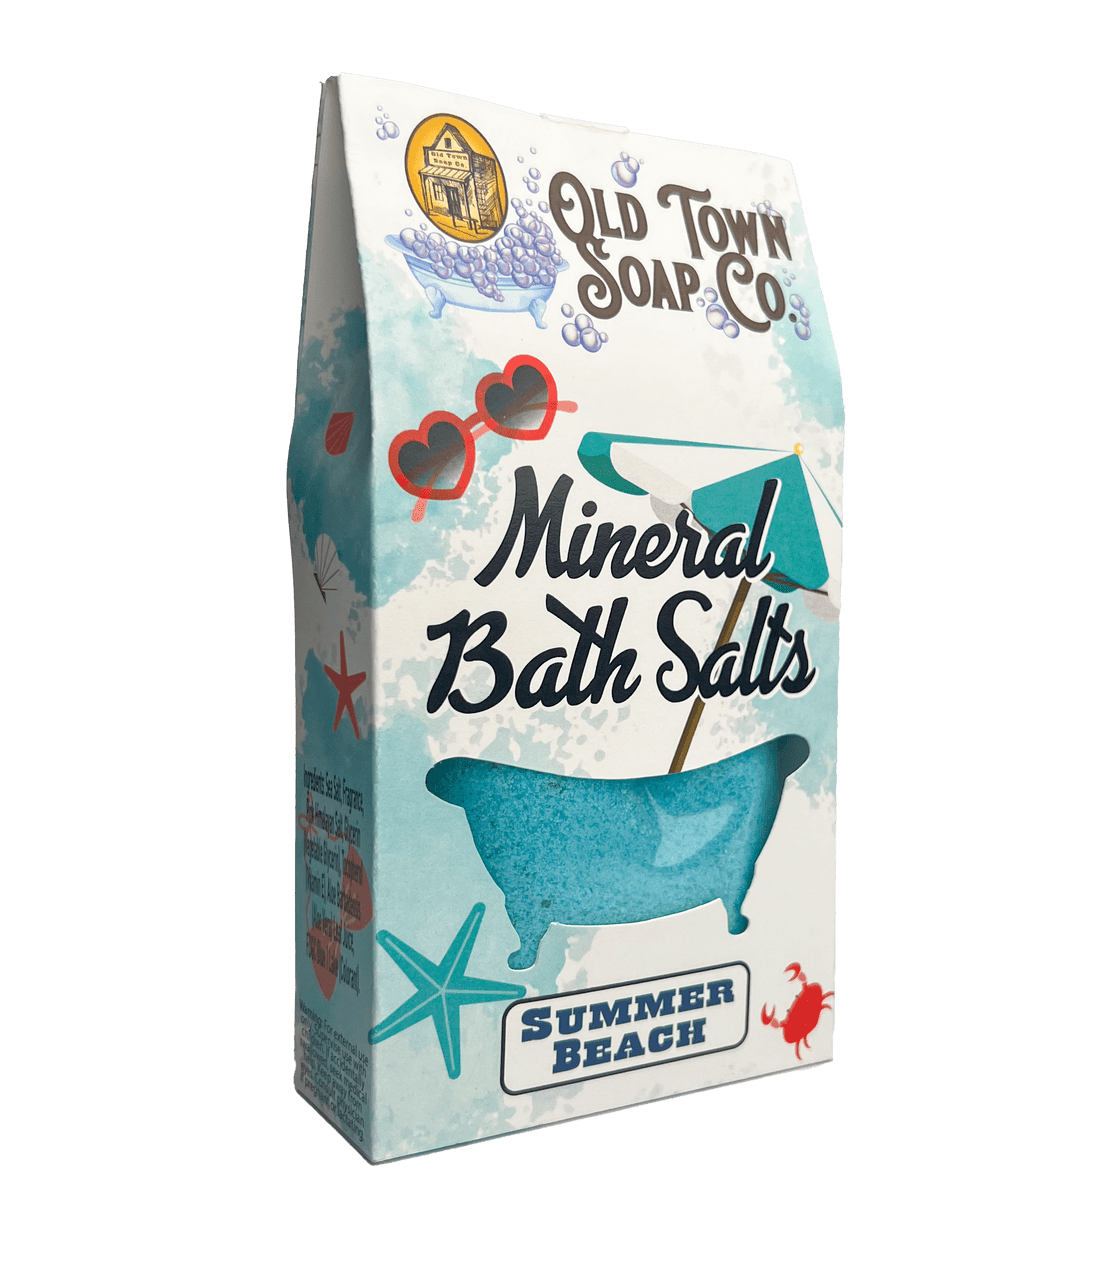 Summer Beach Bath Salts - Old Town Soap Co.